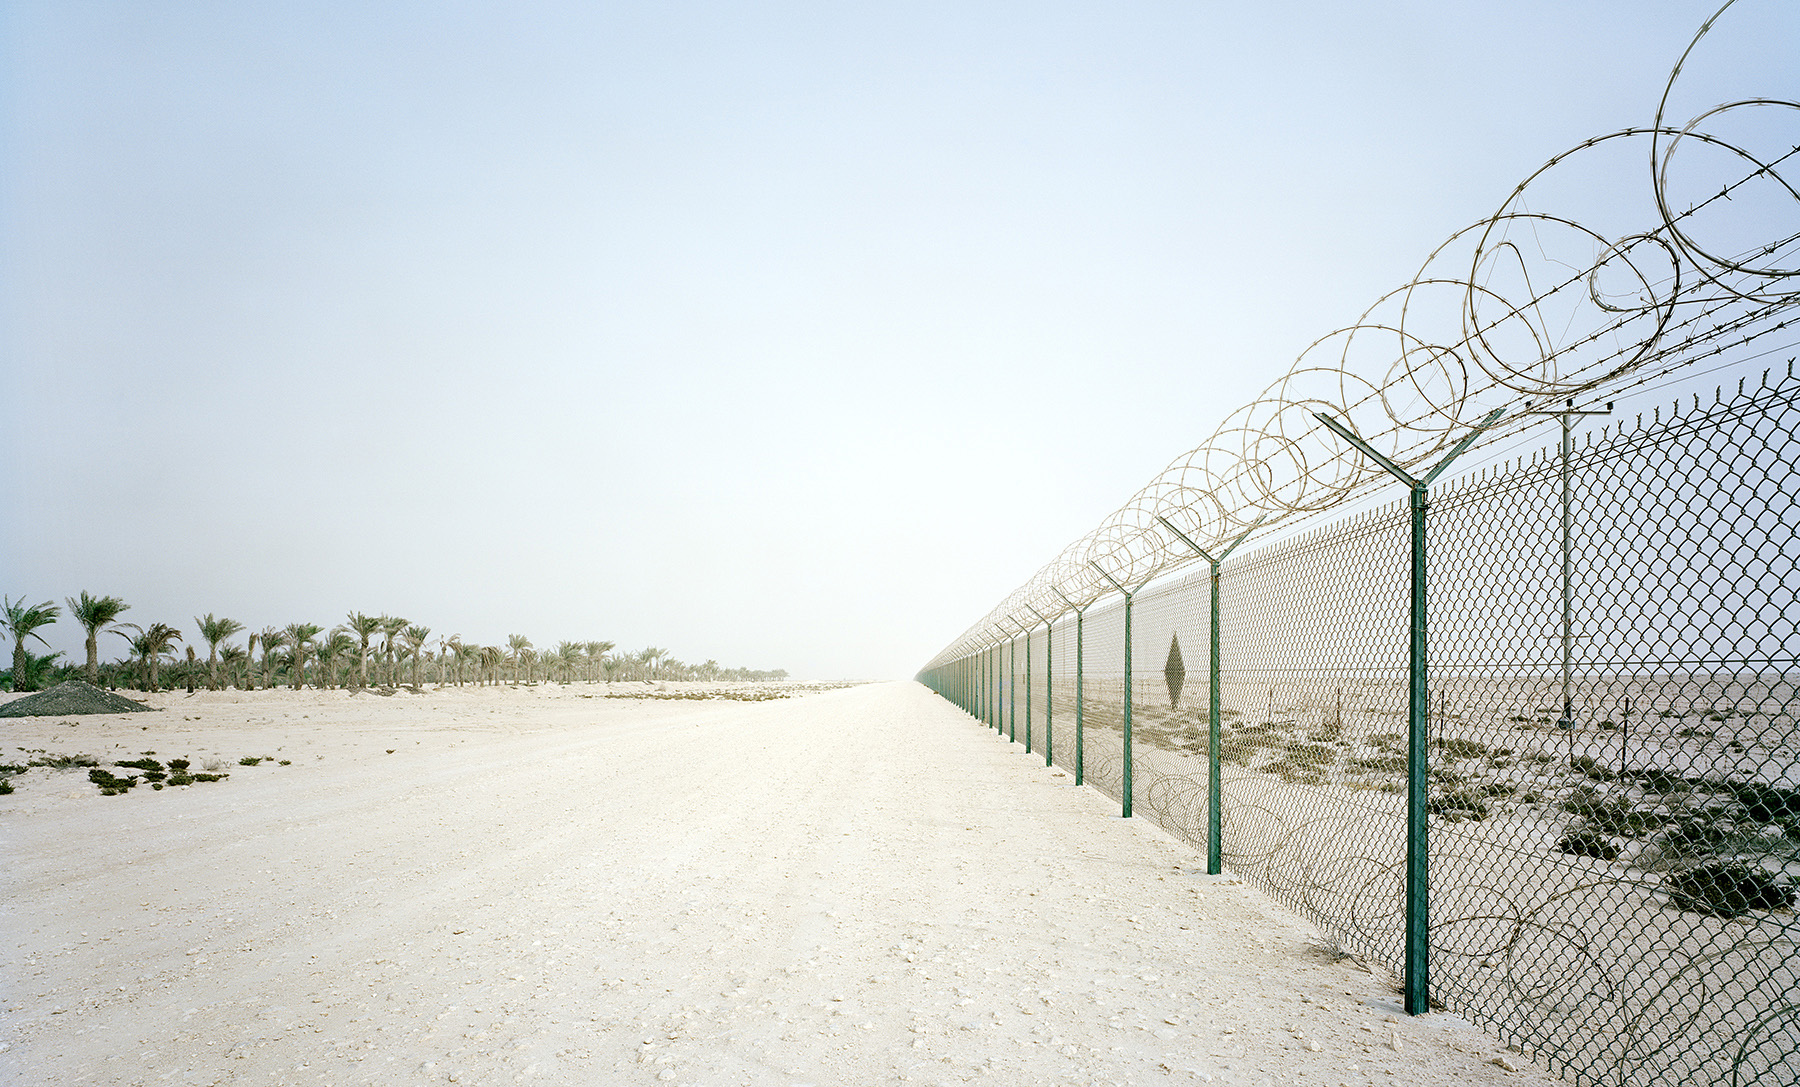  Fence, Ras Laffan, Qatar, 2010  